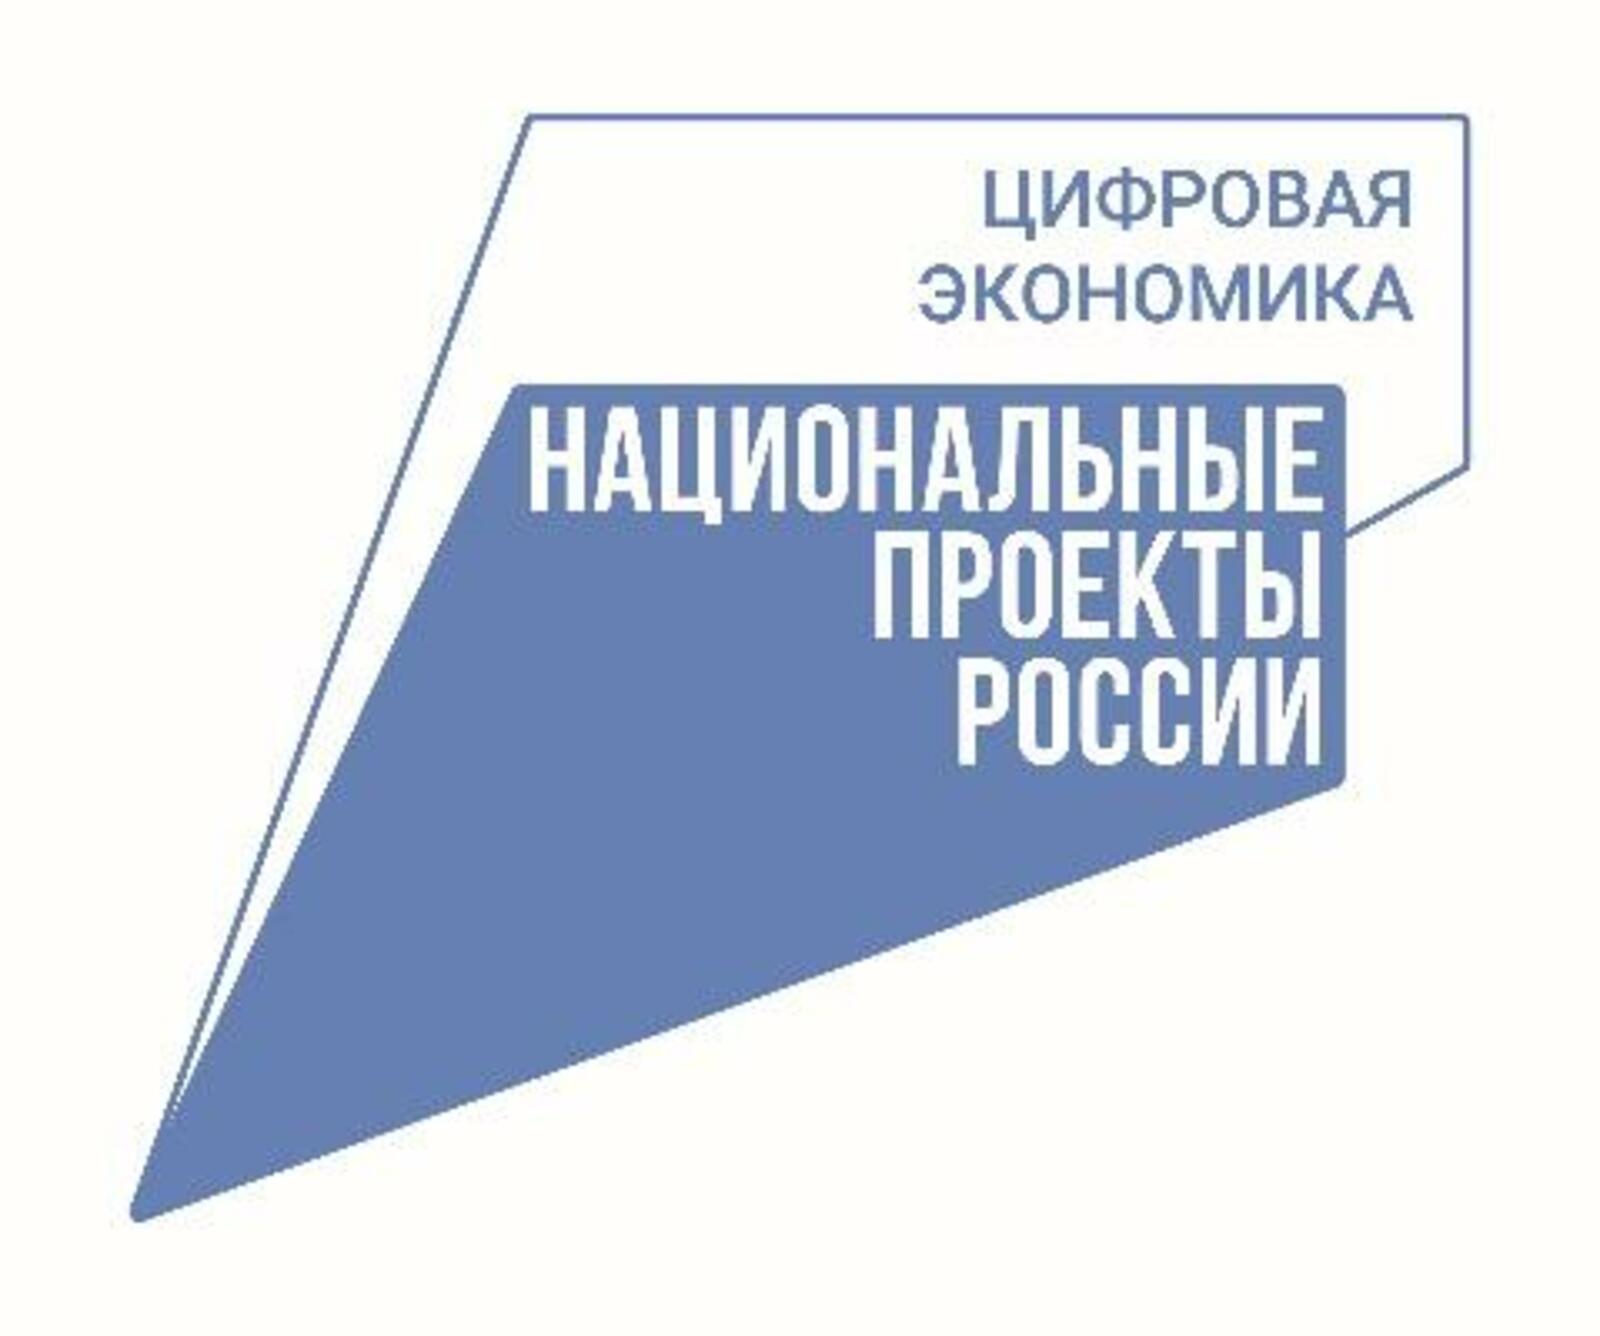 Более 3000 социально значимых объектов в Республике Башкортостан подключены к интернету по национальному проекту «Цифровая экономика»